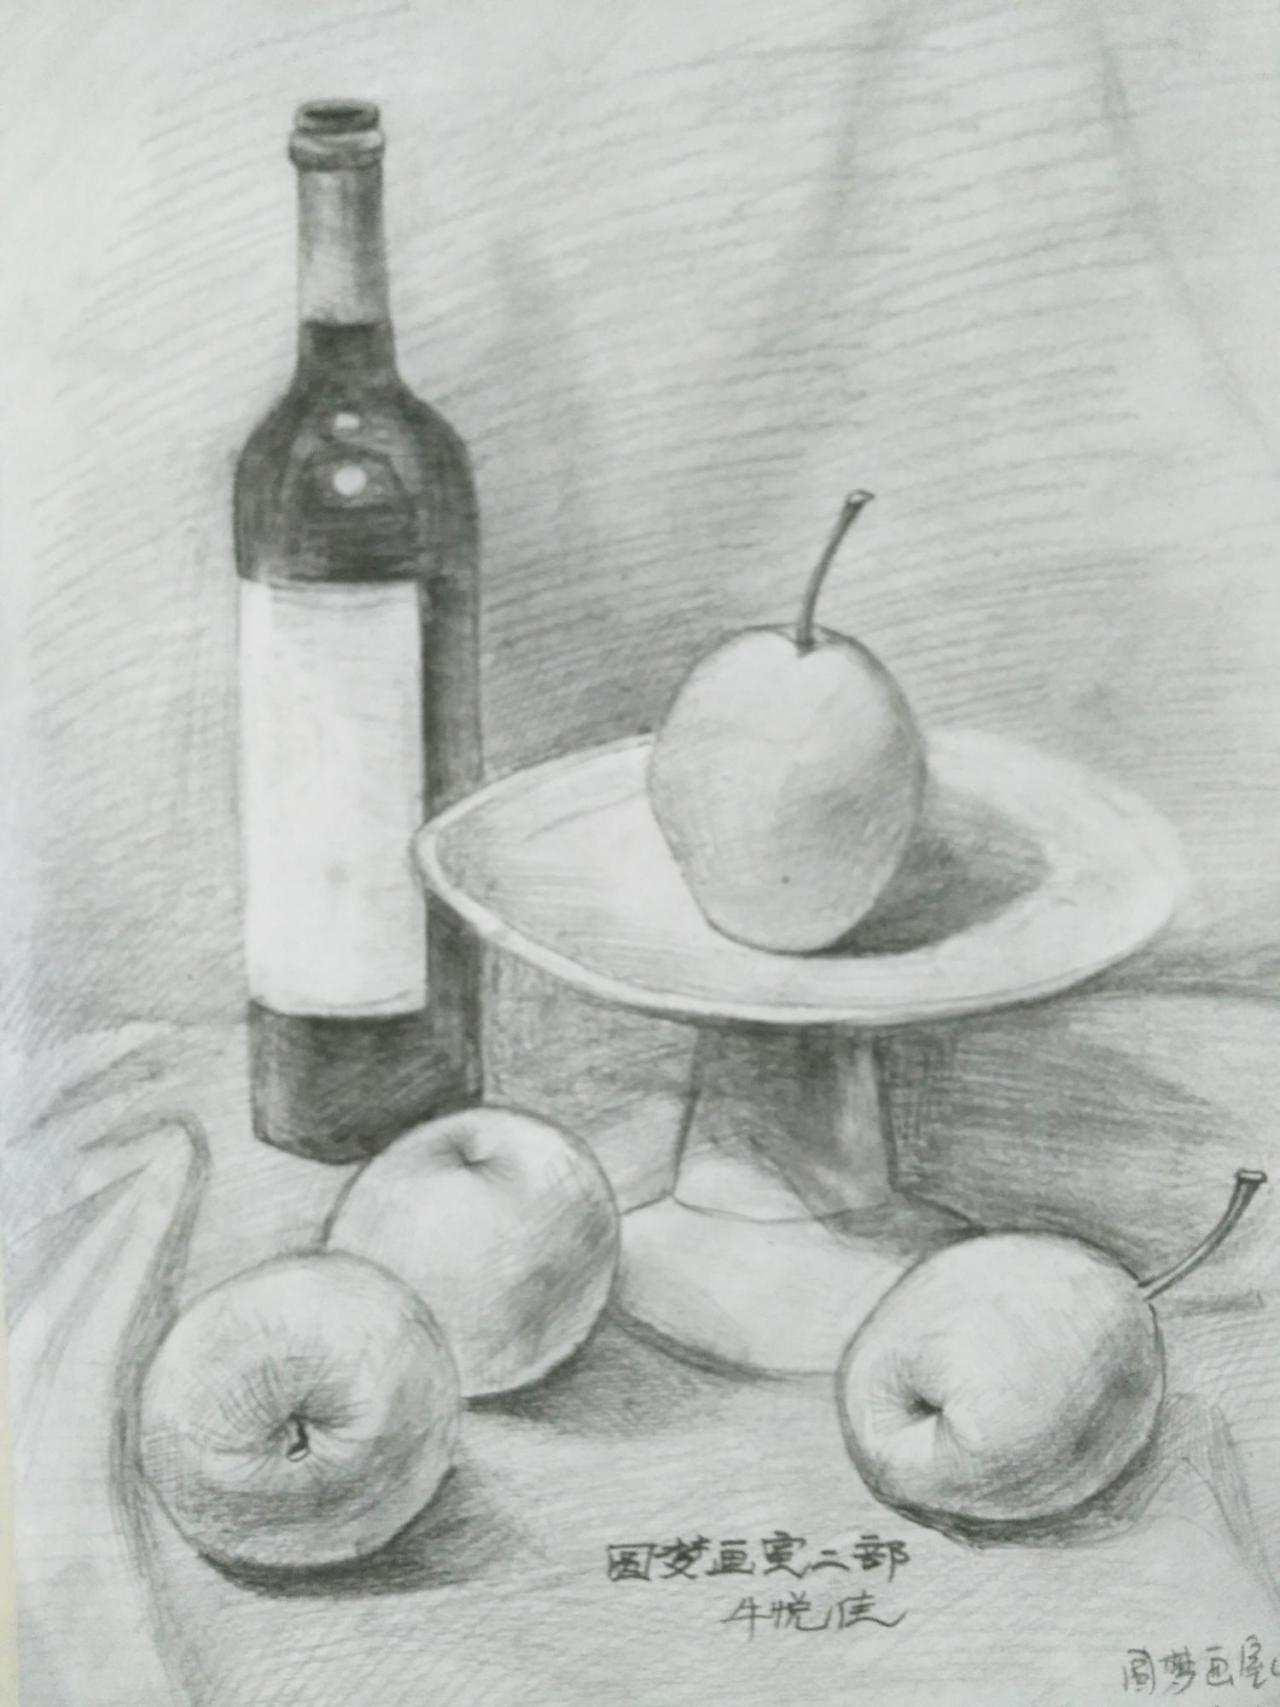 酒瓶、梨、碗、苹果 静物素描 牛悦佳画